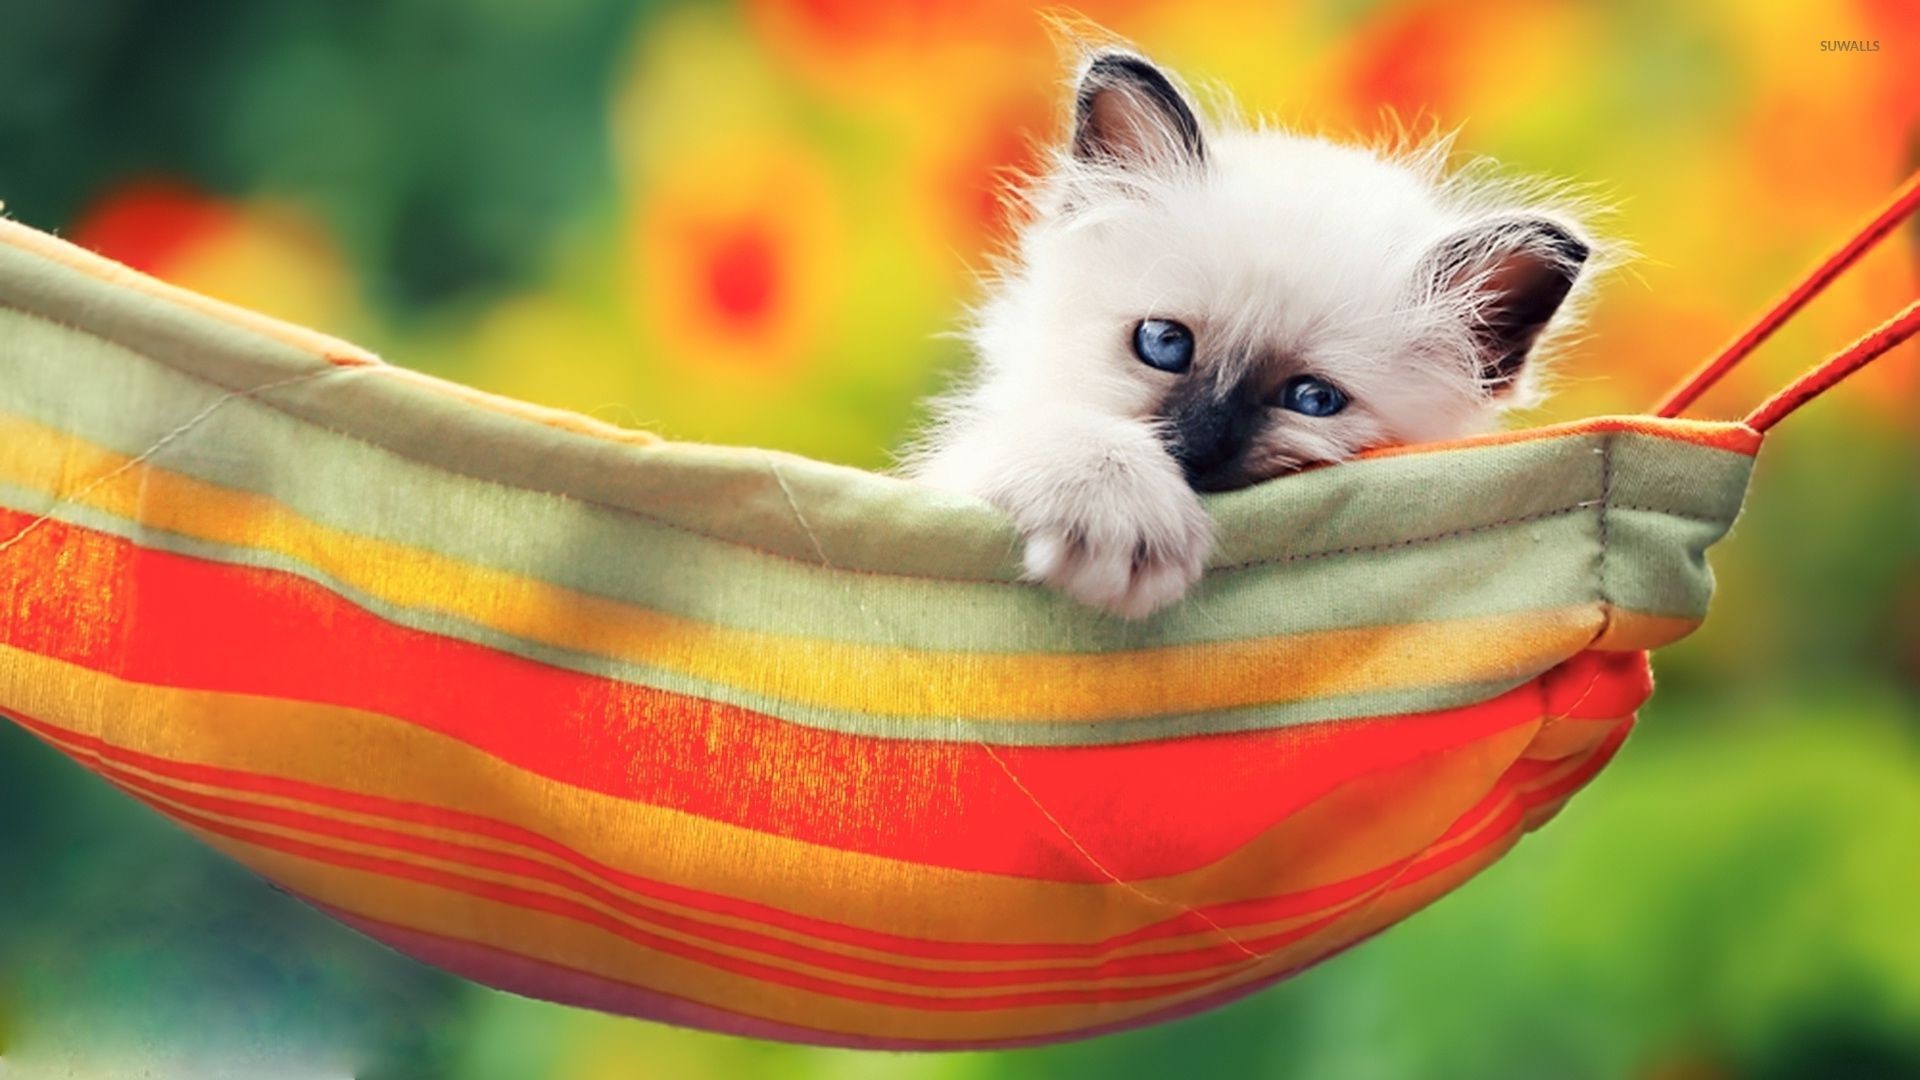 1920x1080 Kitten in the hammock wallpaper